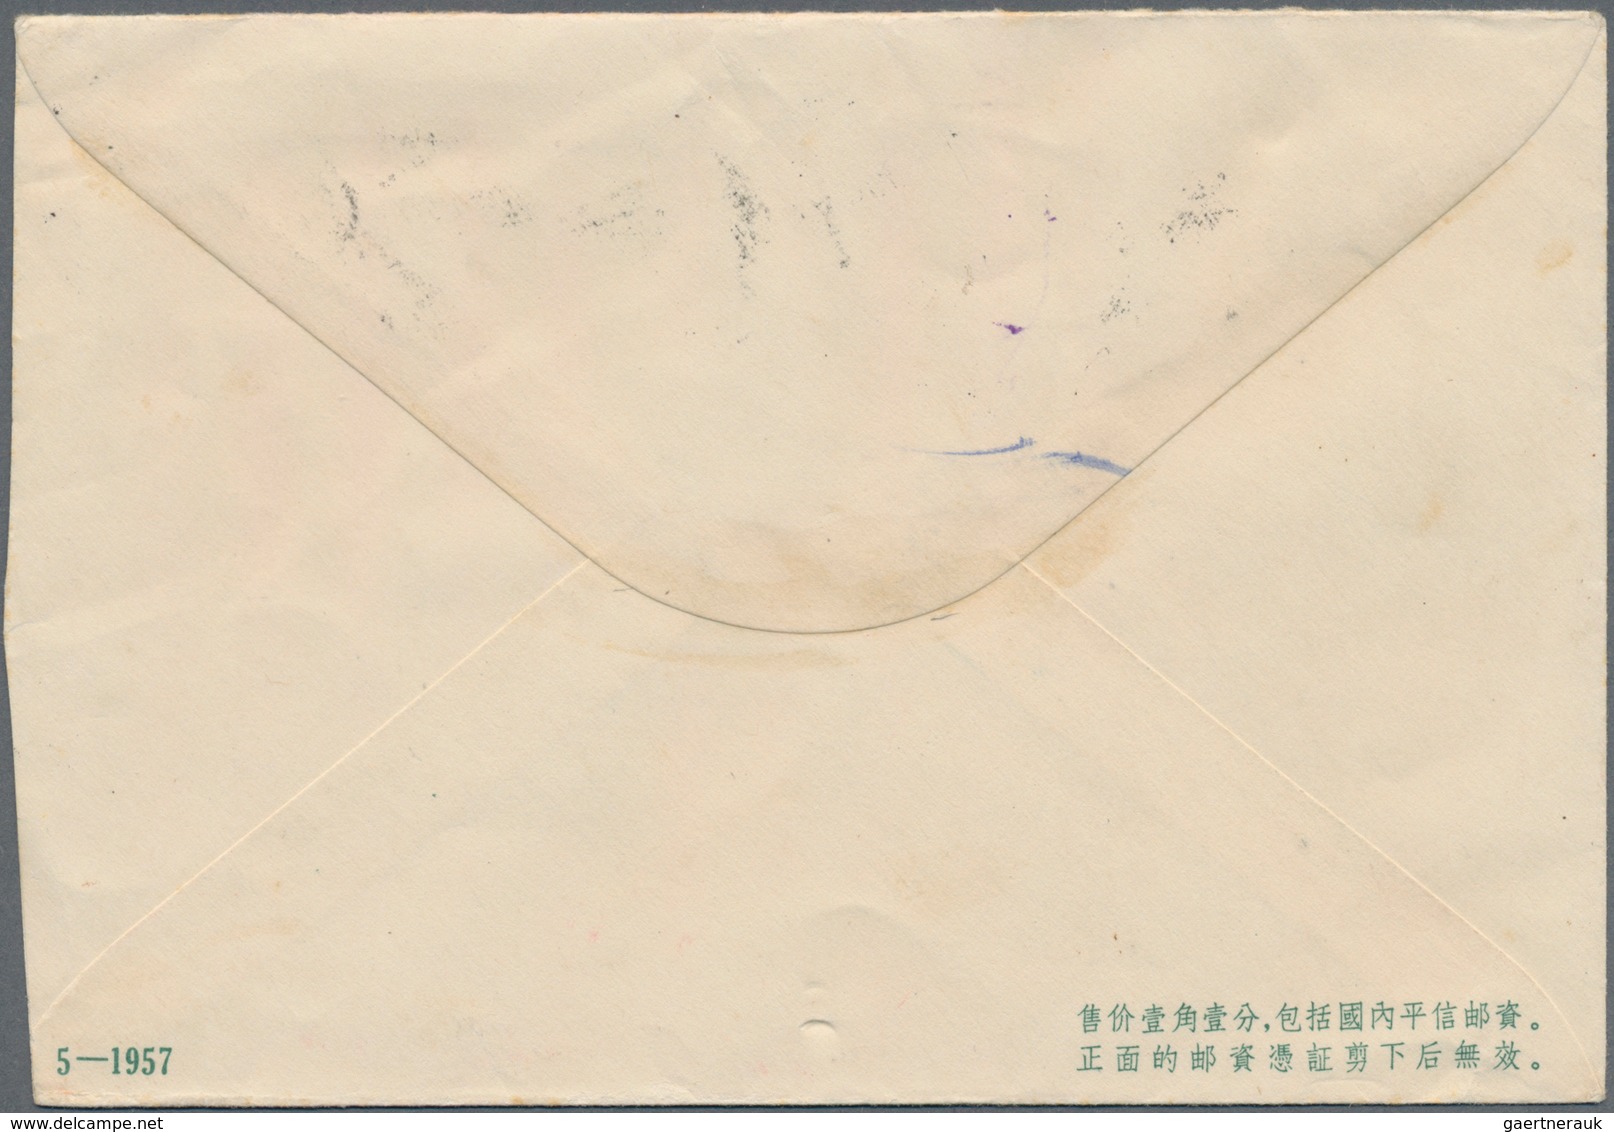 China - Volksrepublik - Ganzsachen: 1957, "arts envelopes" pictorial envelopes 8 F. green (3) with i